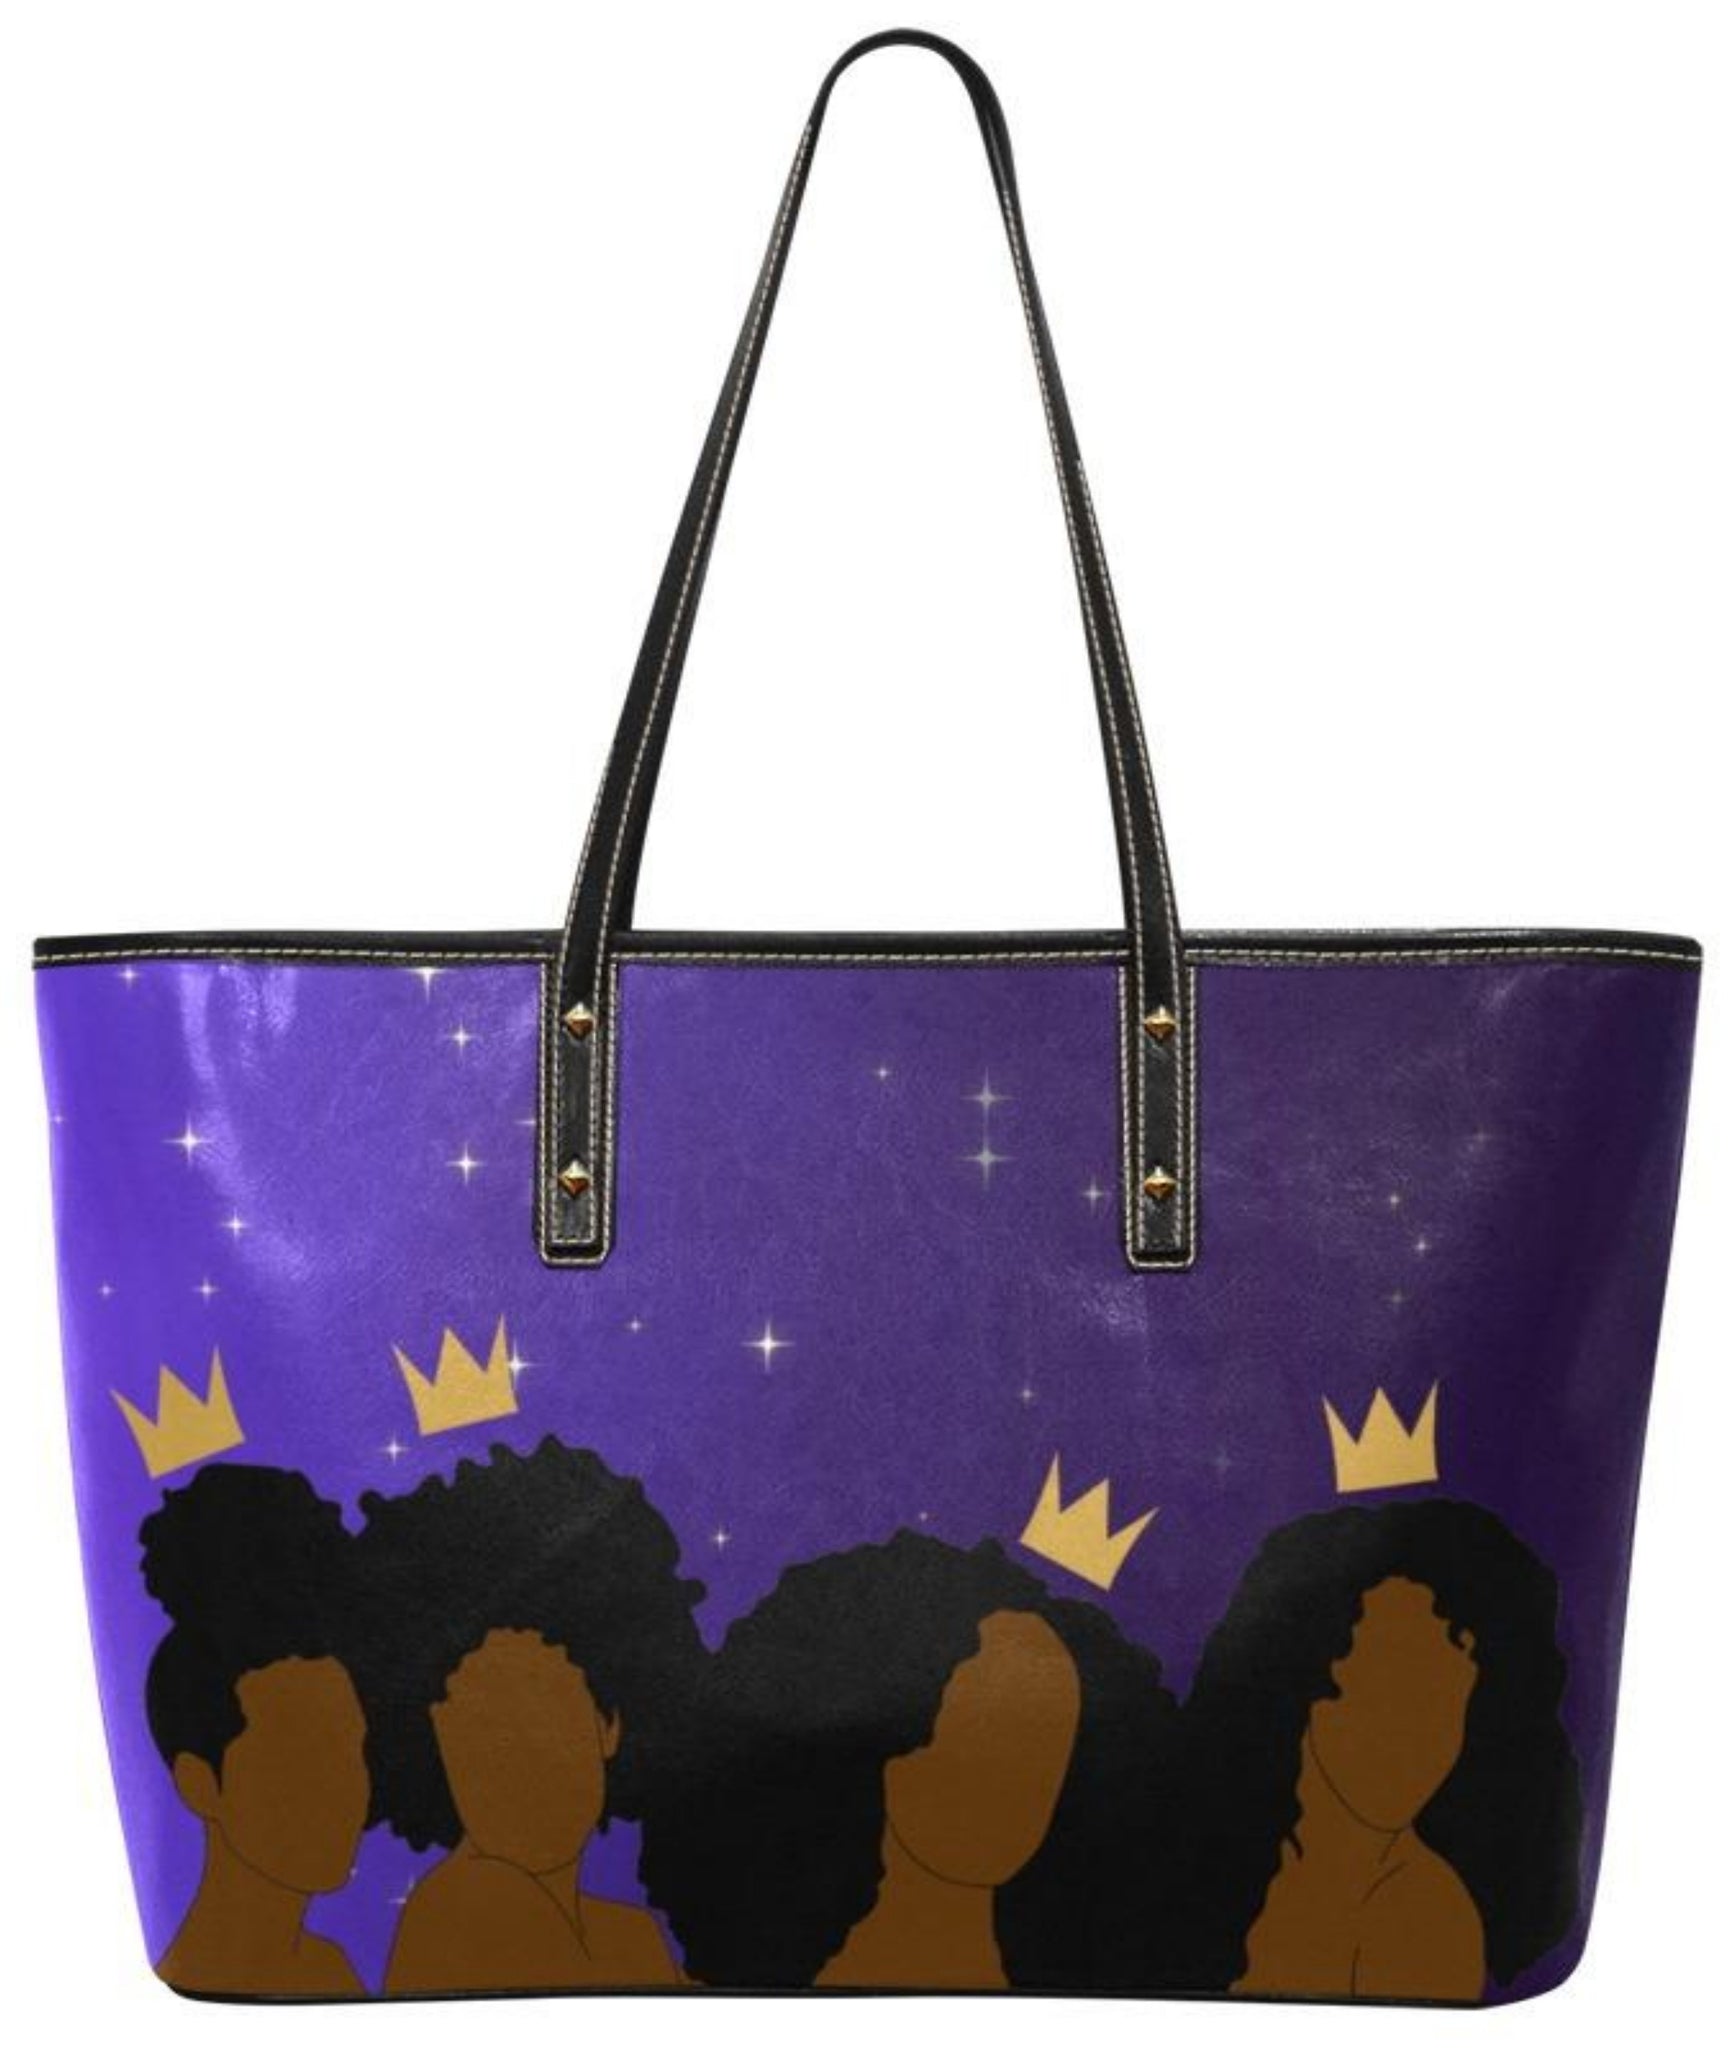 4 Queens Afrocentric Tote Bag, Melanin Queen Bag